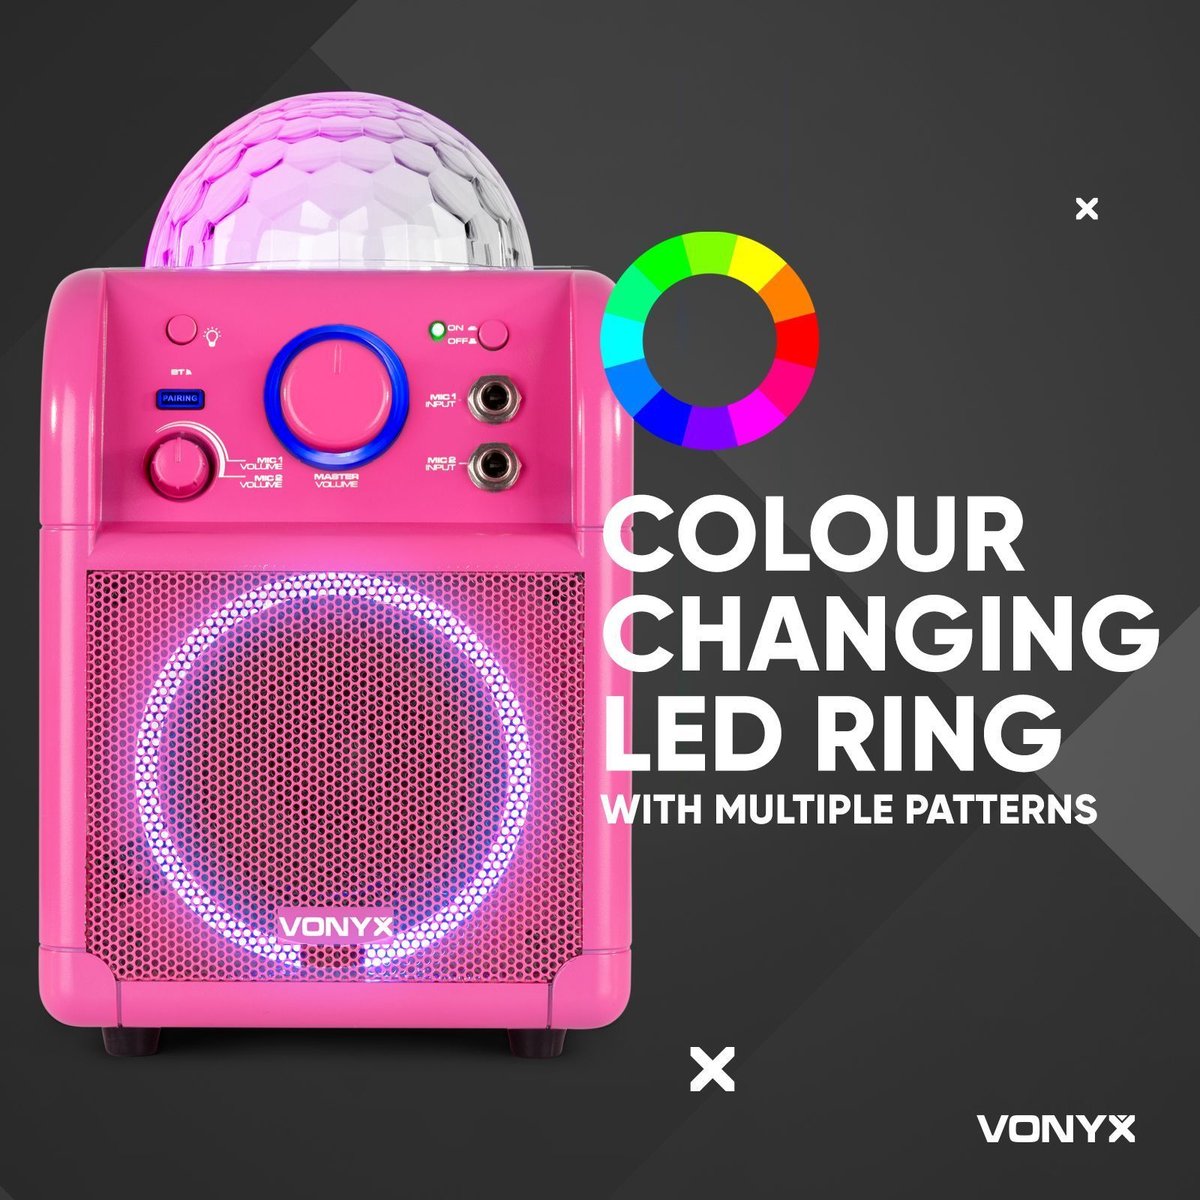 Kit karaoké - Vonyx SBS50P Kit karaoké rose sur batterie avec